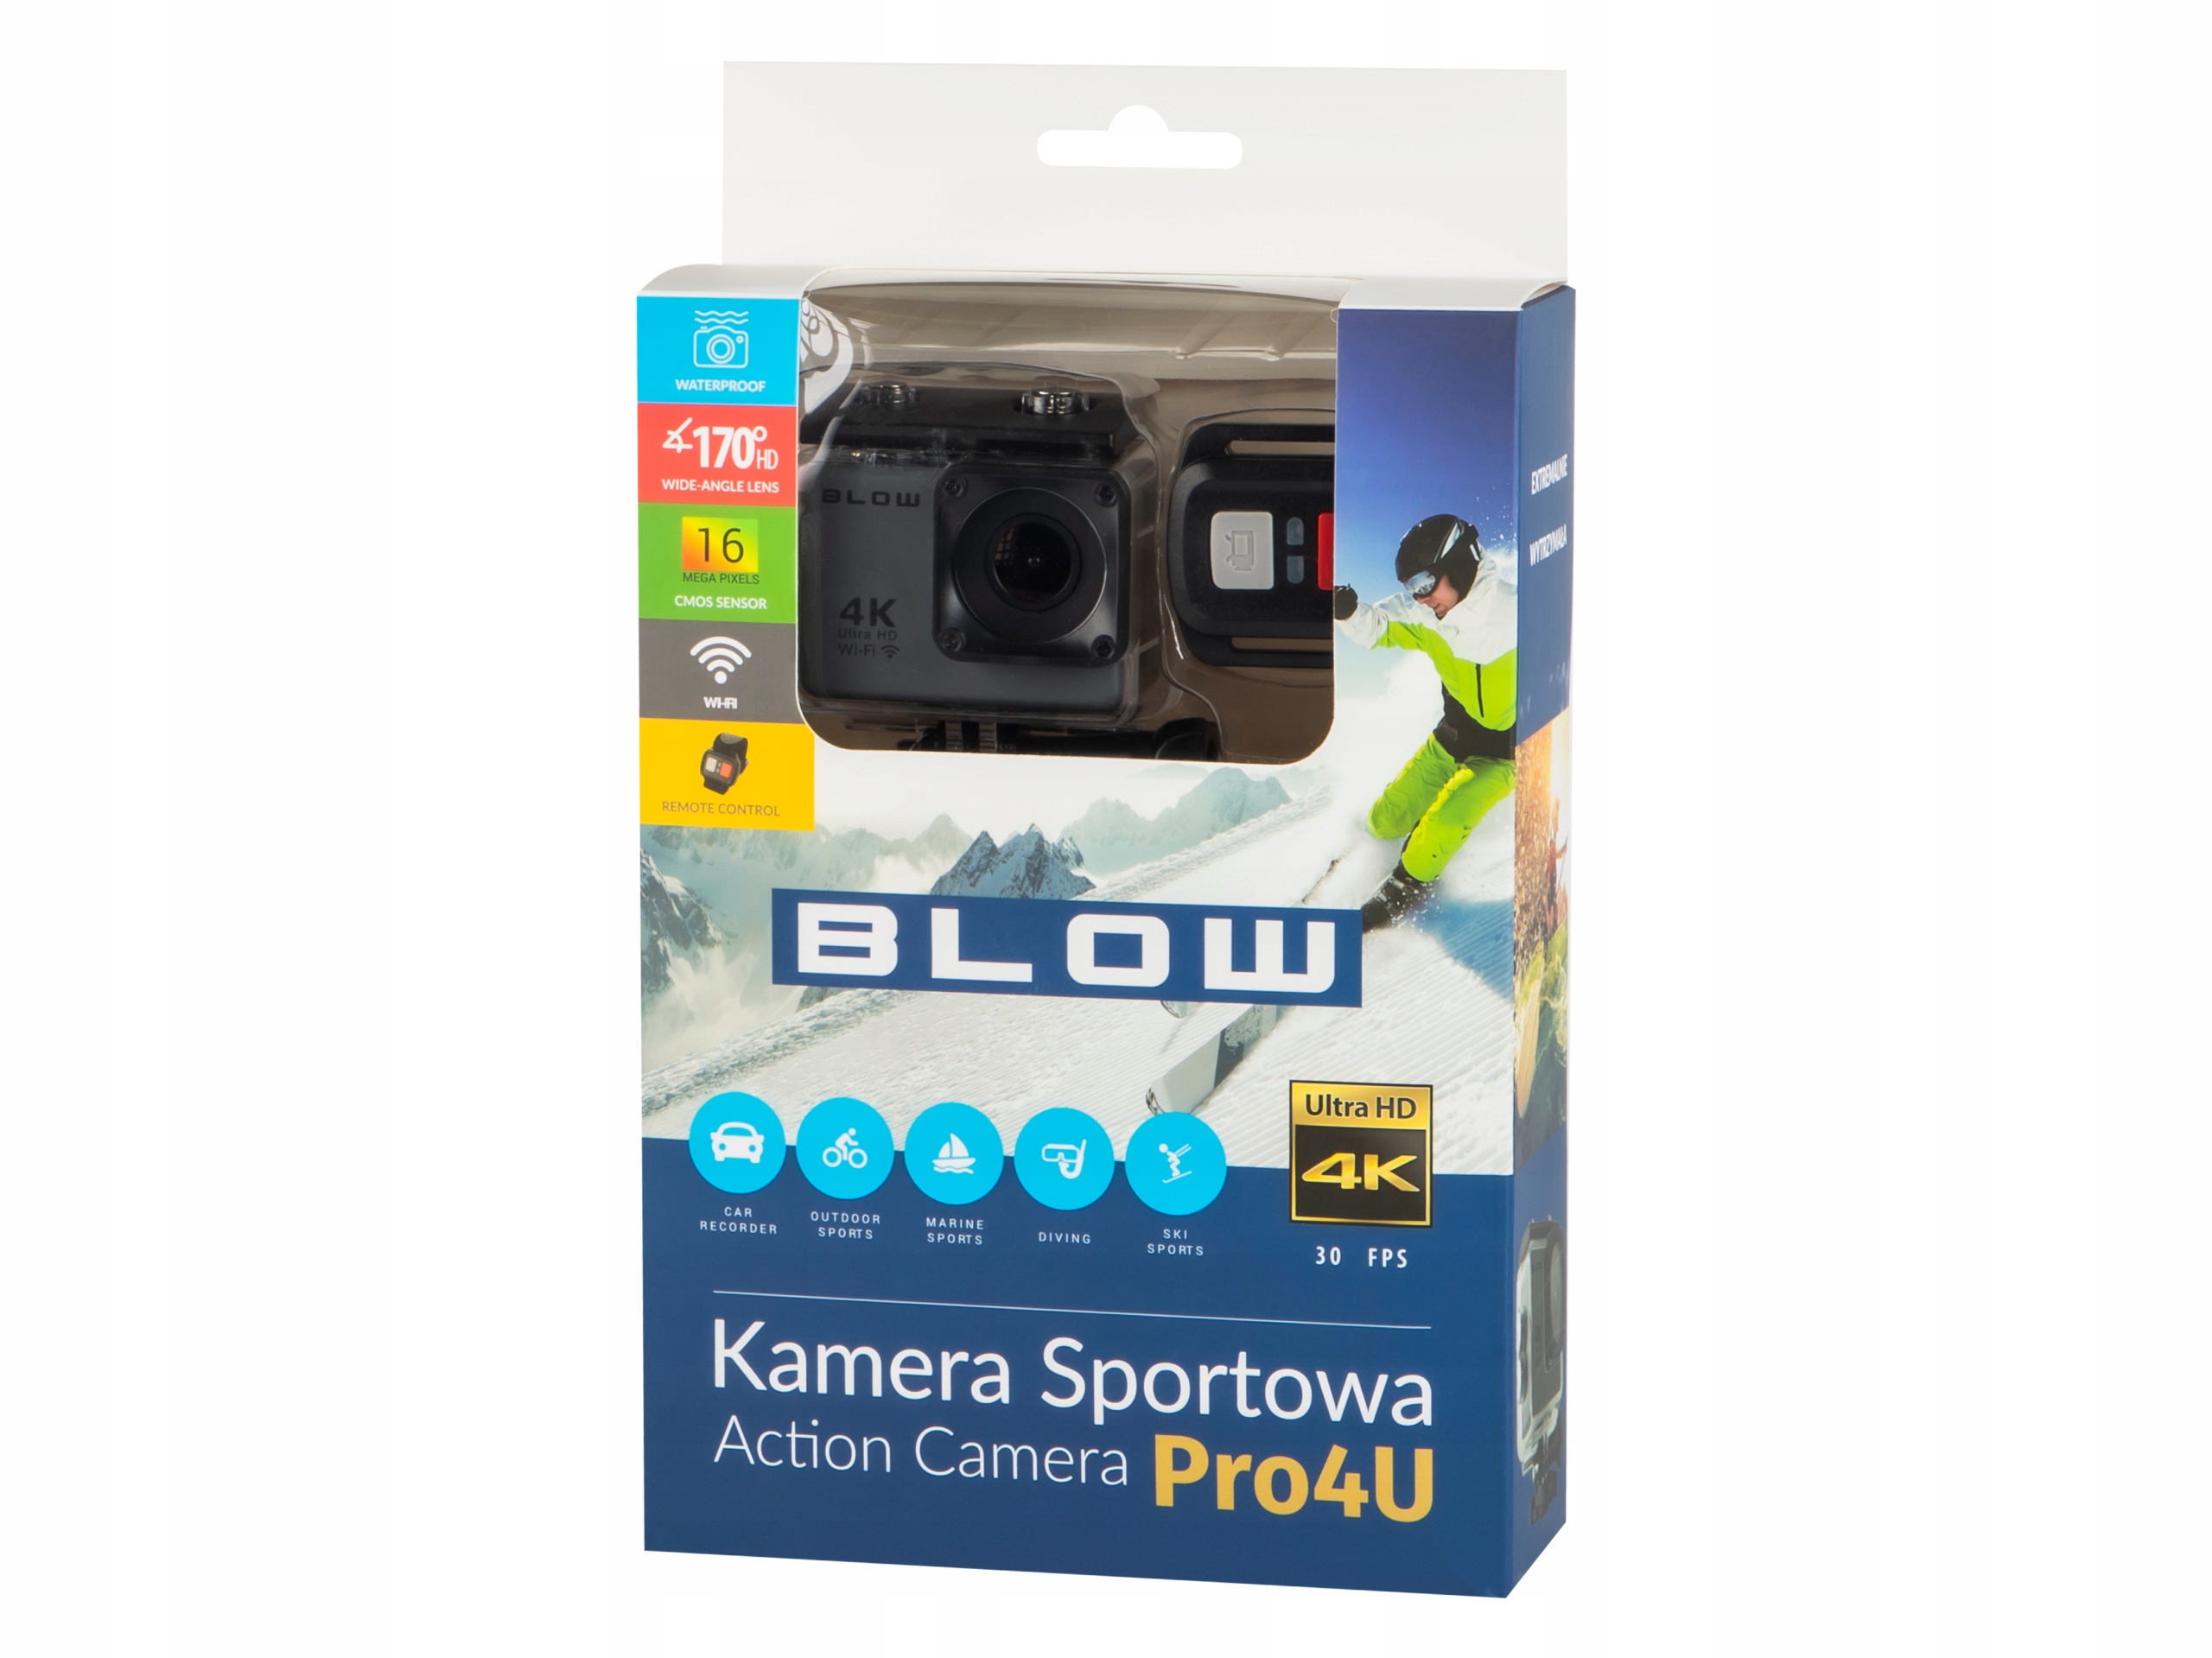 BLOW Go Pro4U 4K sporto kamera wifi priedai Paskirties vieta bėgimas golfas aviacija motociklas slidinėjimas ir snieglenčių sportas plaukimas dviratis automobilis sporto salė ir fitnesas triatlonas žygiai žvejyba buriavimas